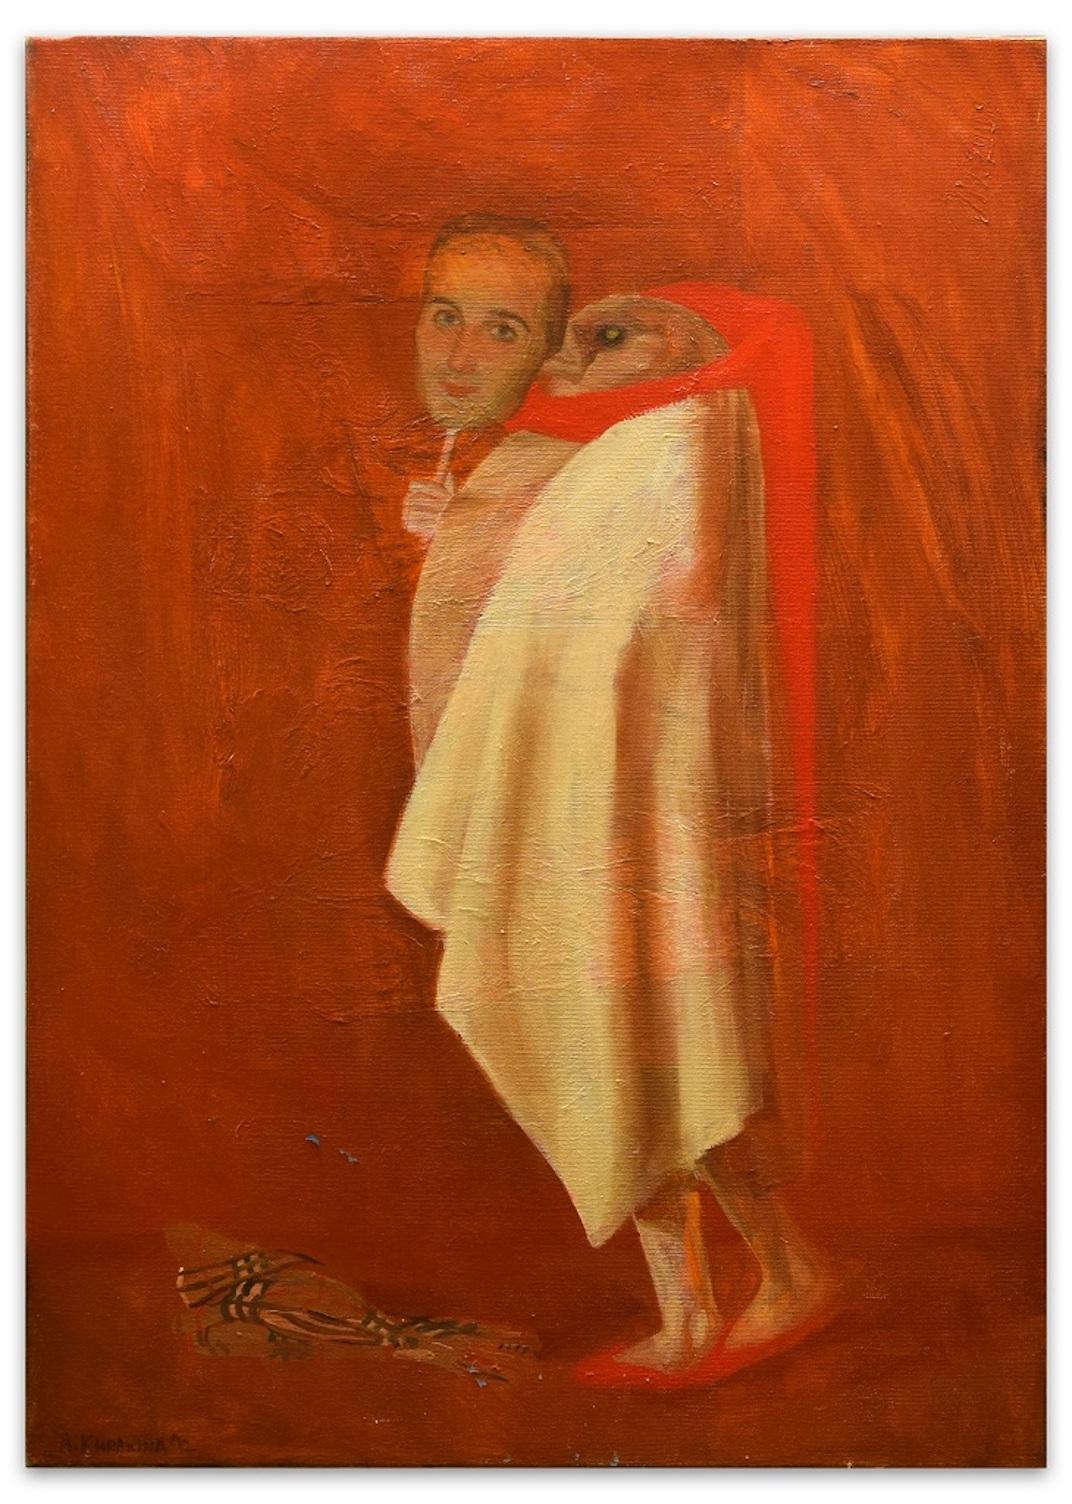 Dorian G. ist ein Original-Ölgemälde auf Leinwand, das im Jahr 2012 von der aufstrebenden Künstlerin Anastasia Kurakina realisiert wurde.

Unterschrift, Titel, Technik und Datum auf der Rückseite. Realisiert in Rom im Jahr 2012 (wie auf der